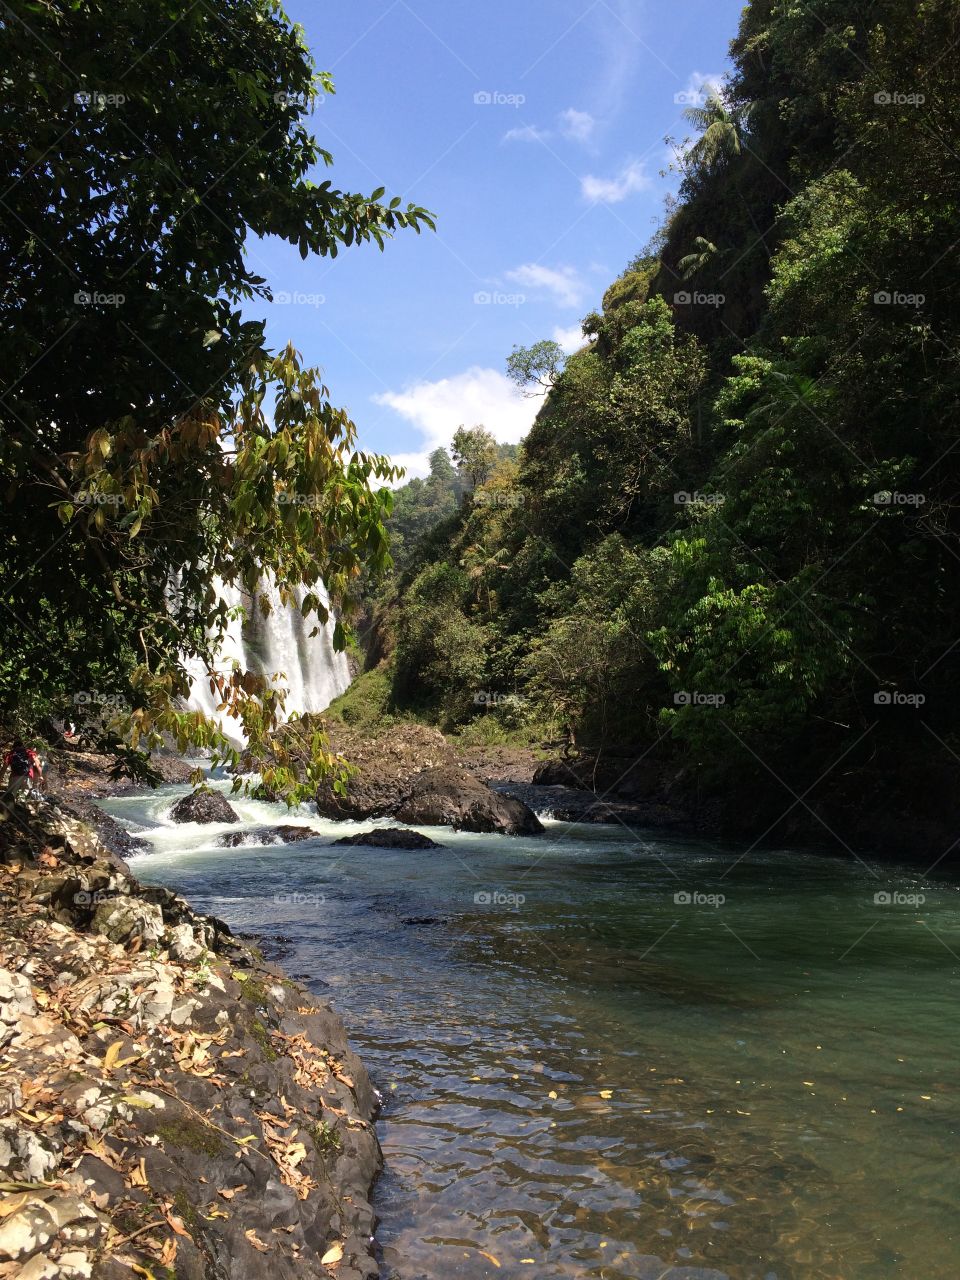 Rio Claro Waterfall in Uberlândia - MG 